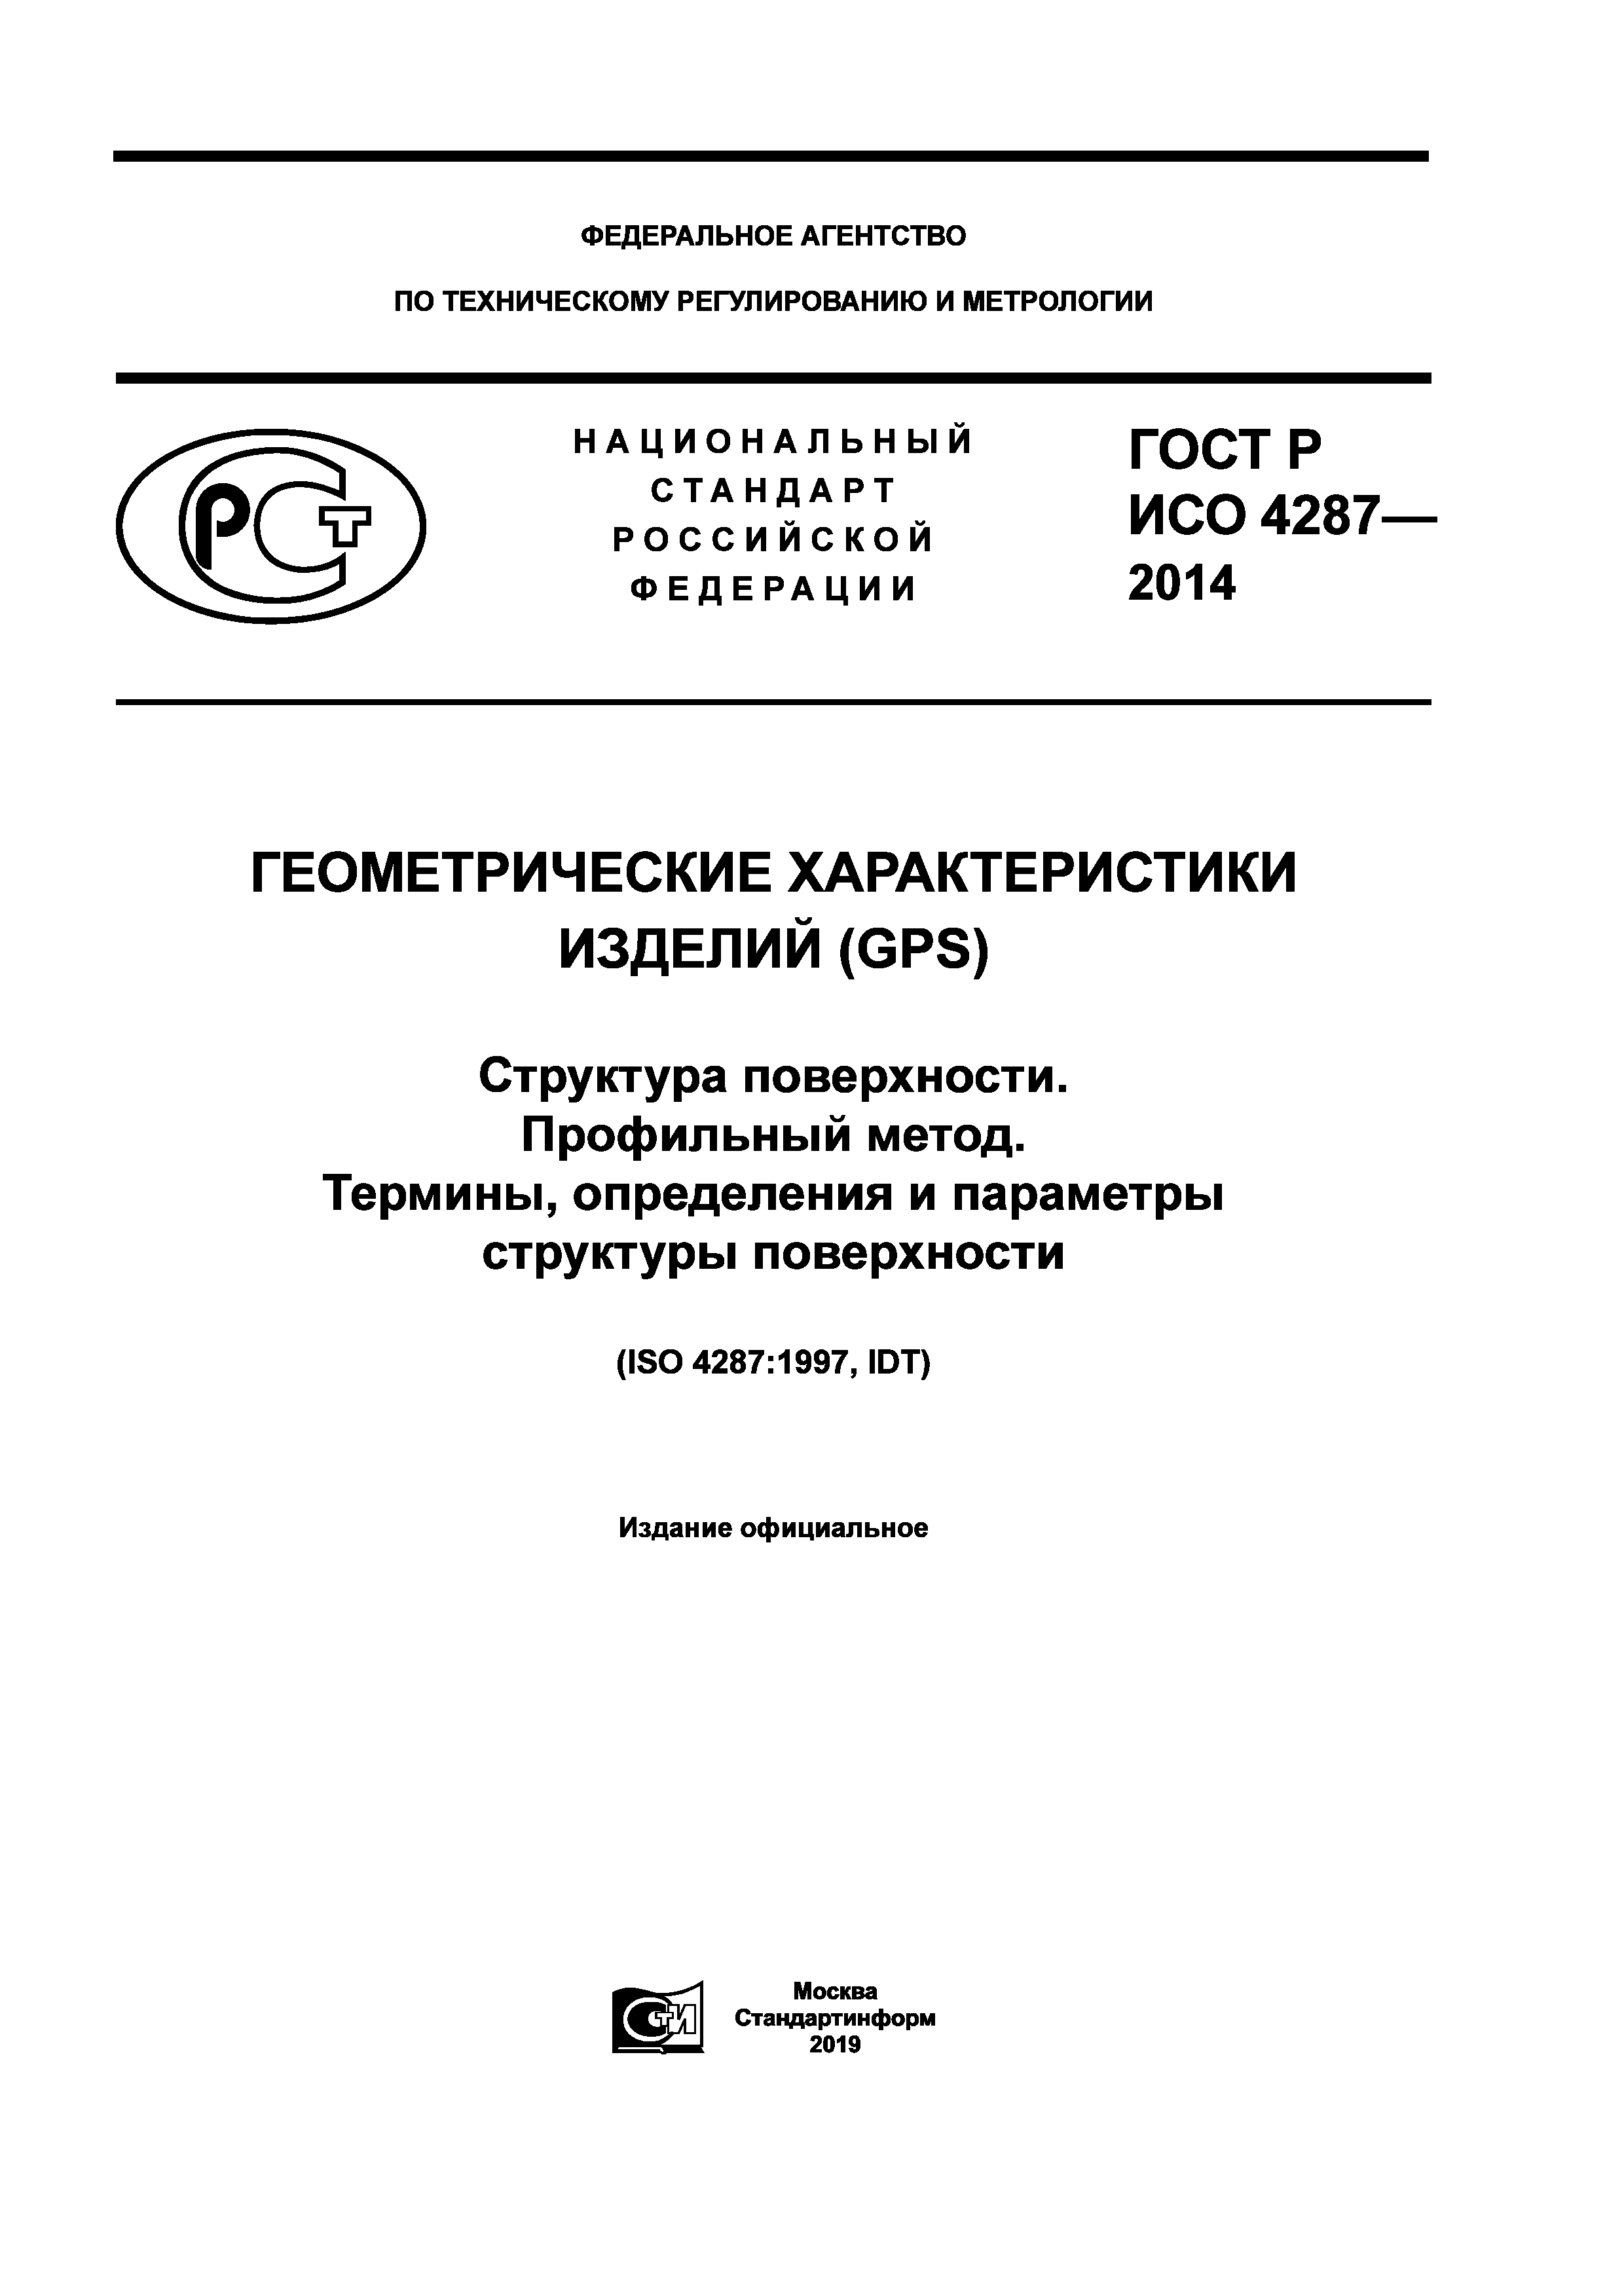 ГОСТ Р ИСО 4287-2014